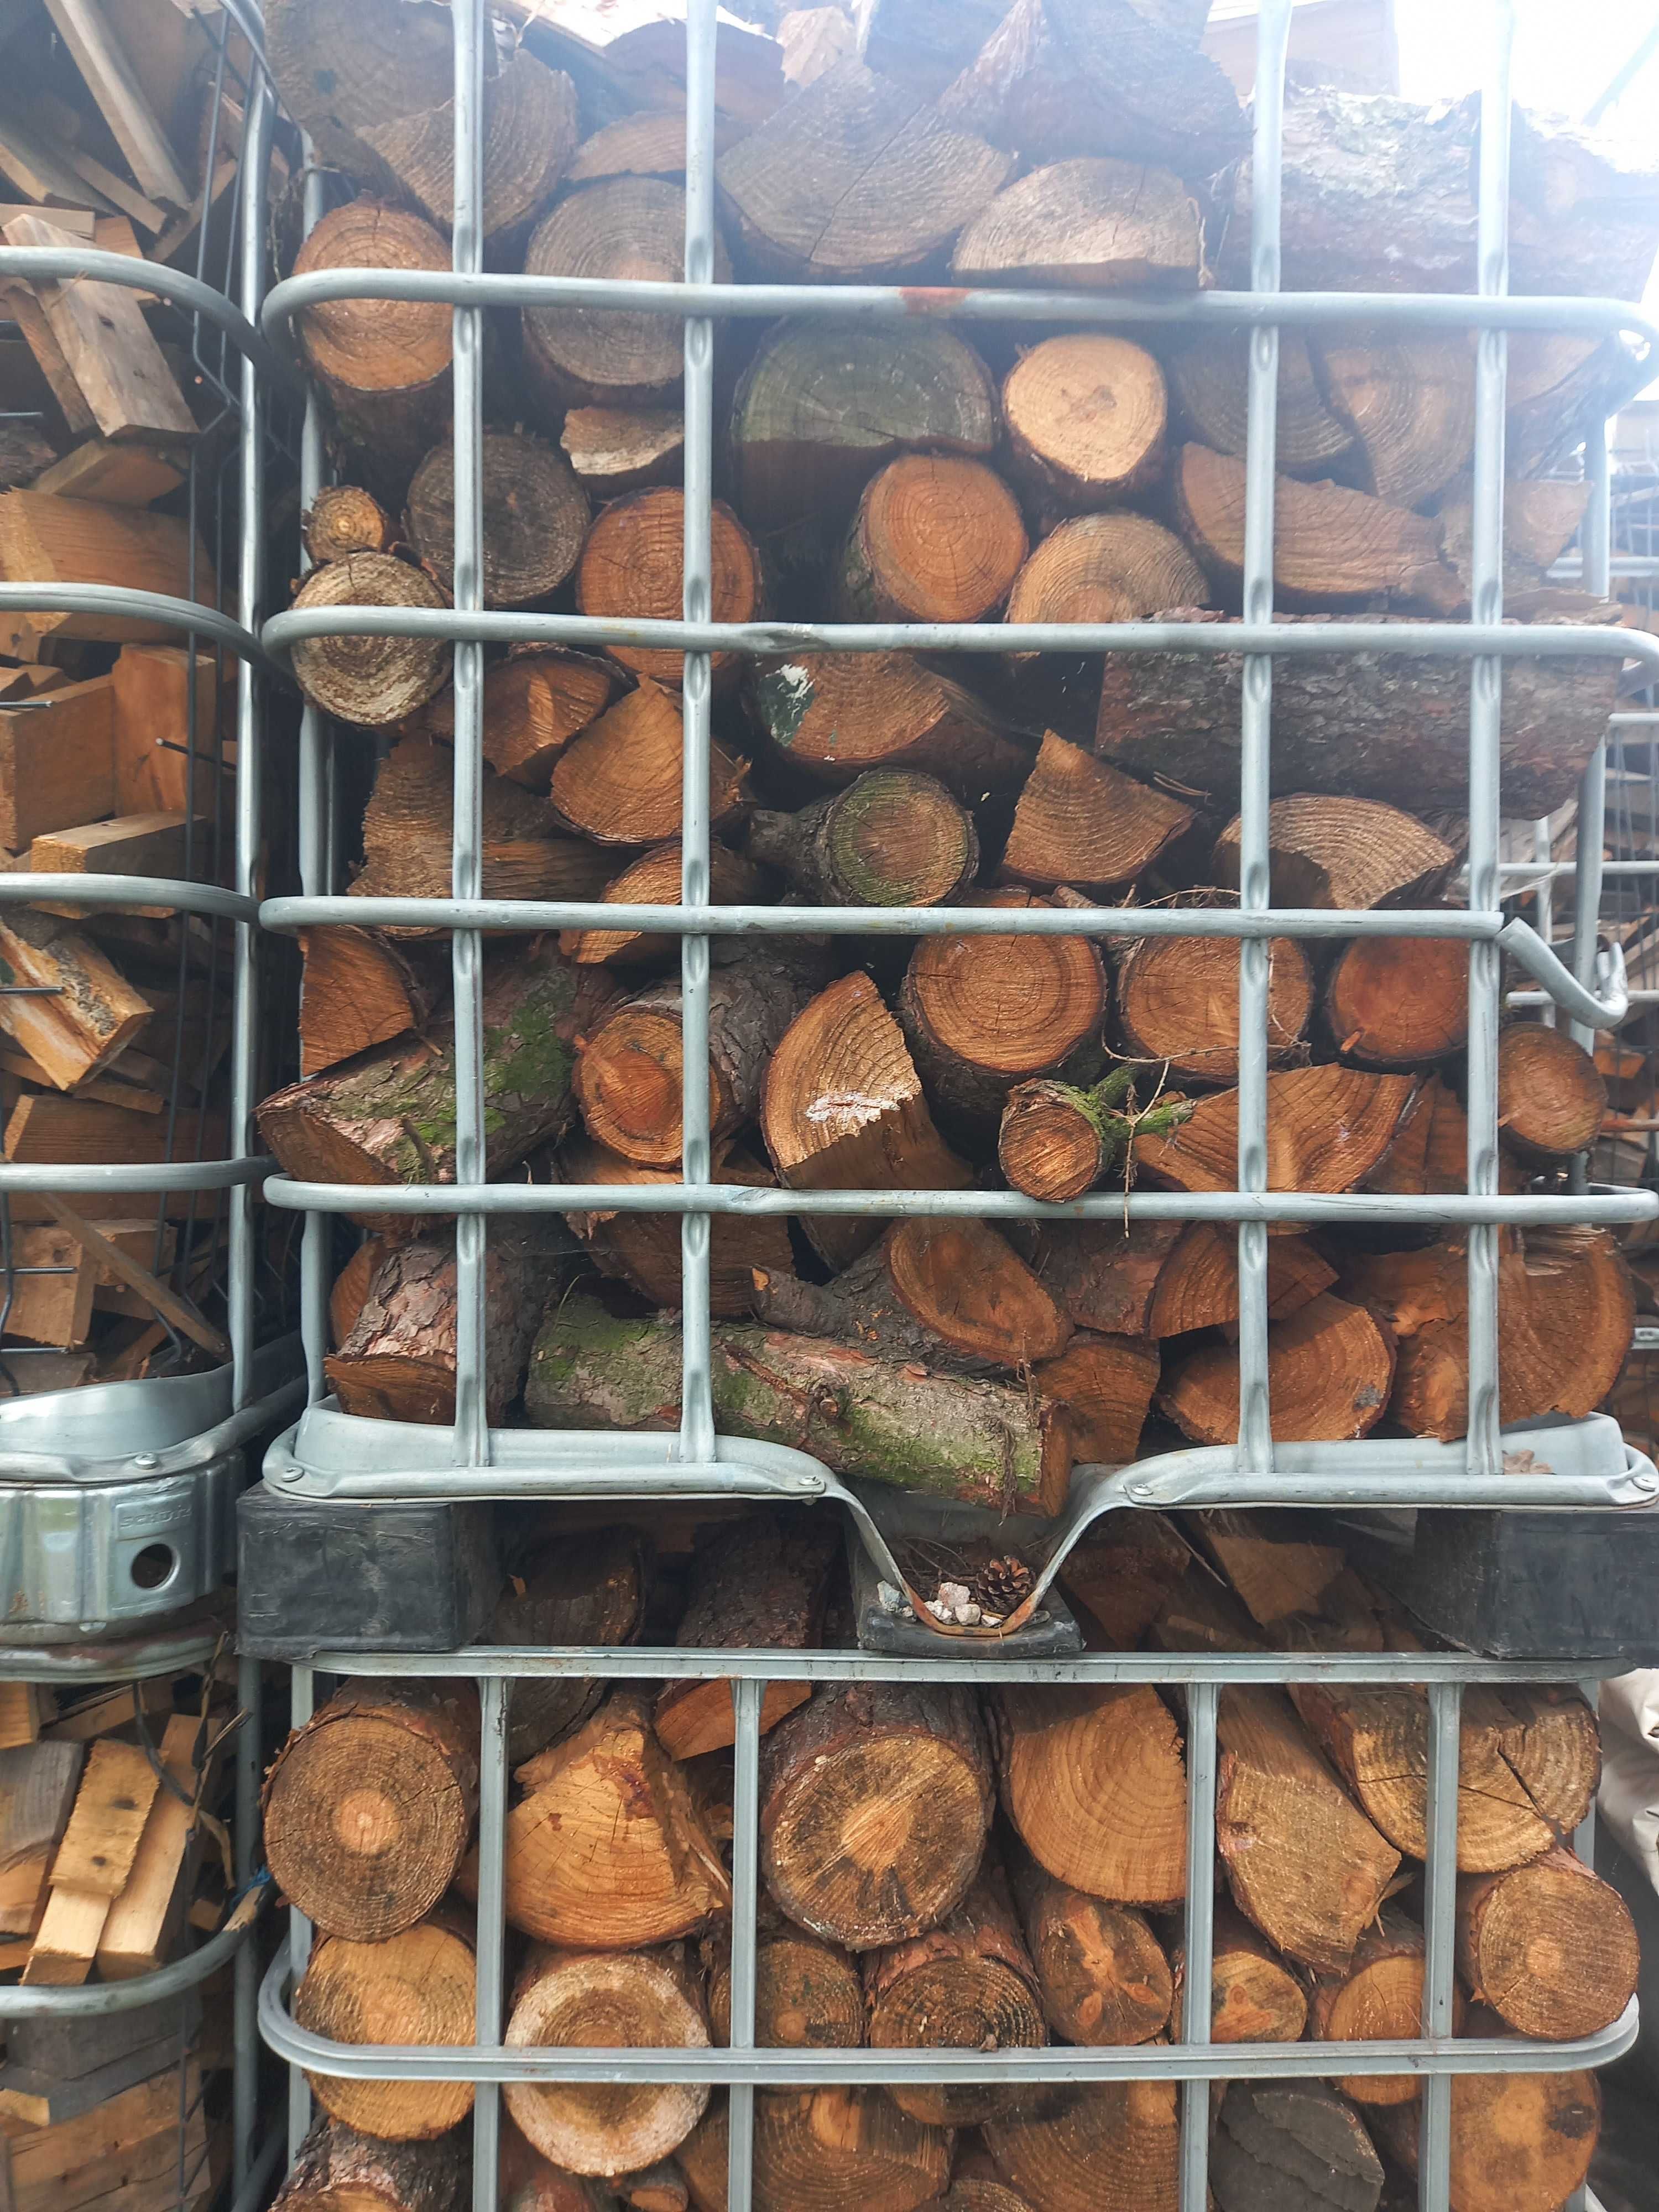 drewno opalowe drzewo kominkowe cena za m3 sosna łupana cieta